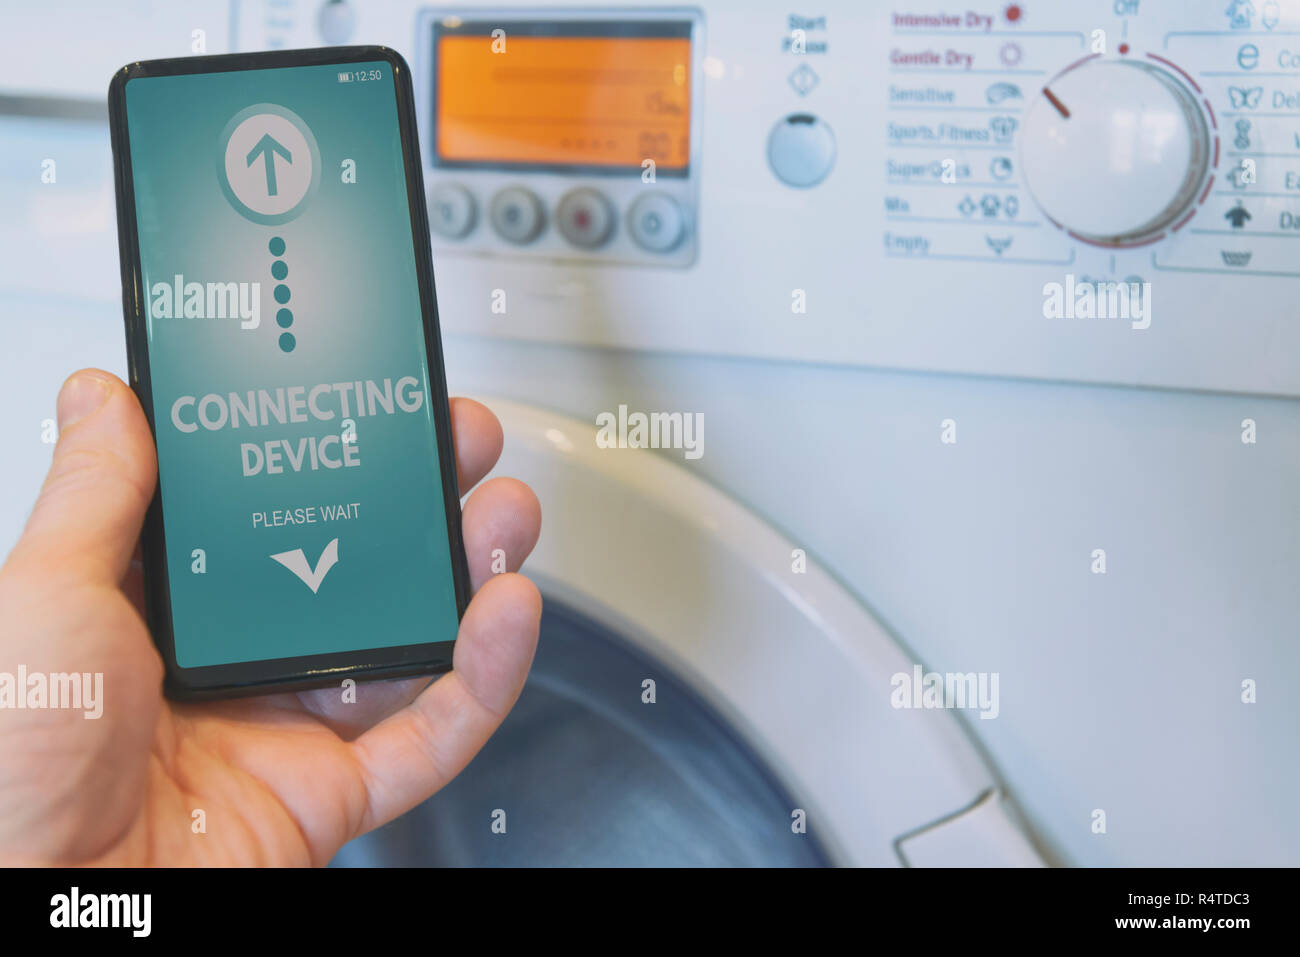 Connexion d'un lave-linge avec smart phone. Smart home et Internet des Objets concept ITO Banque D'Images